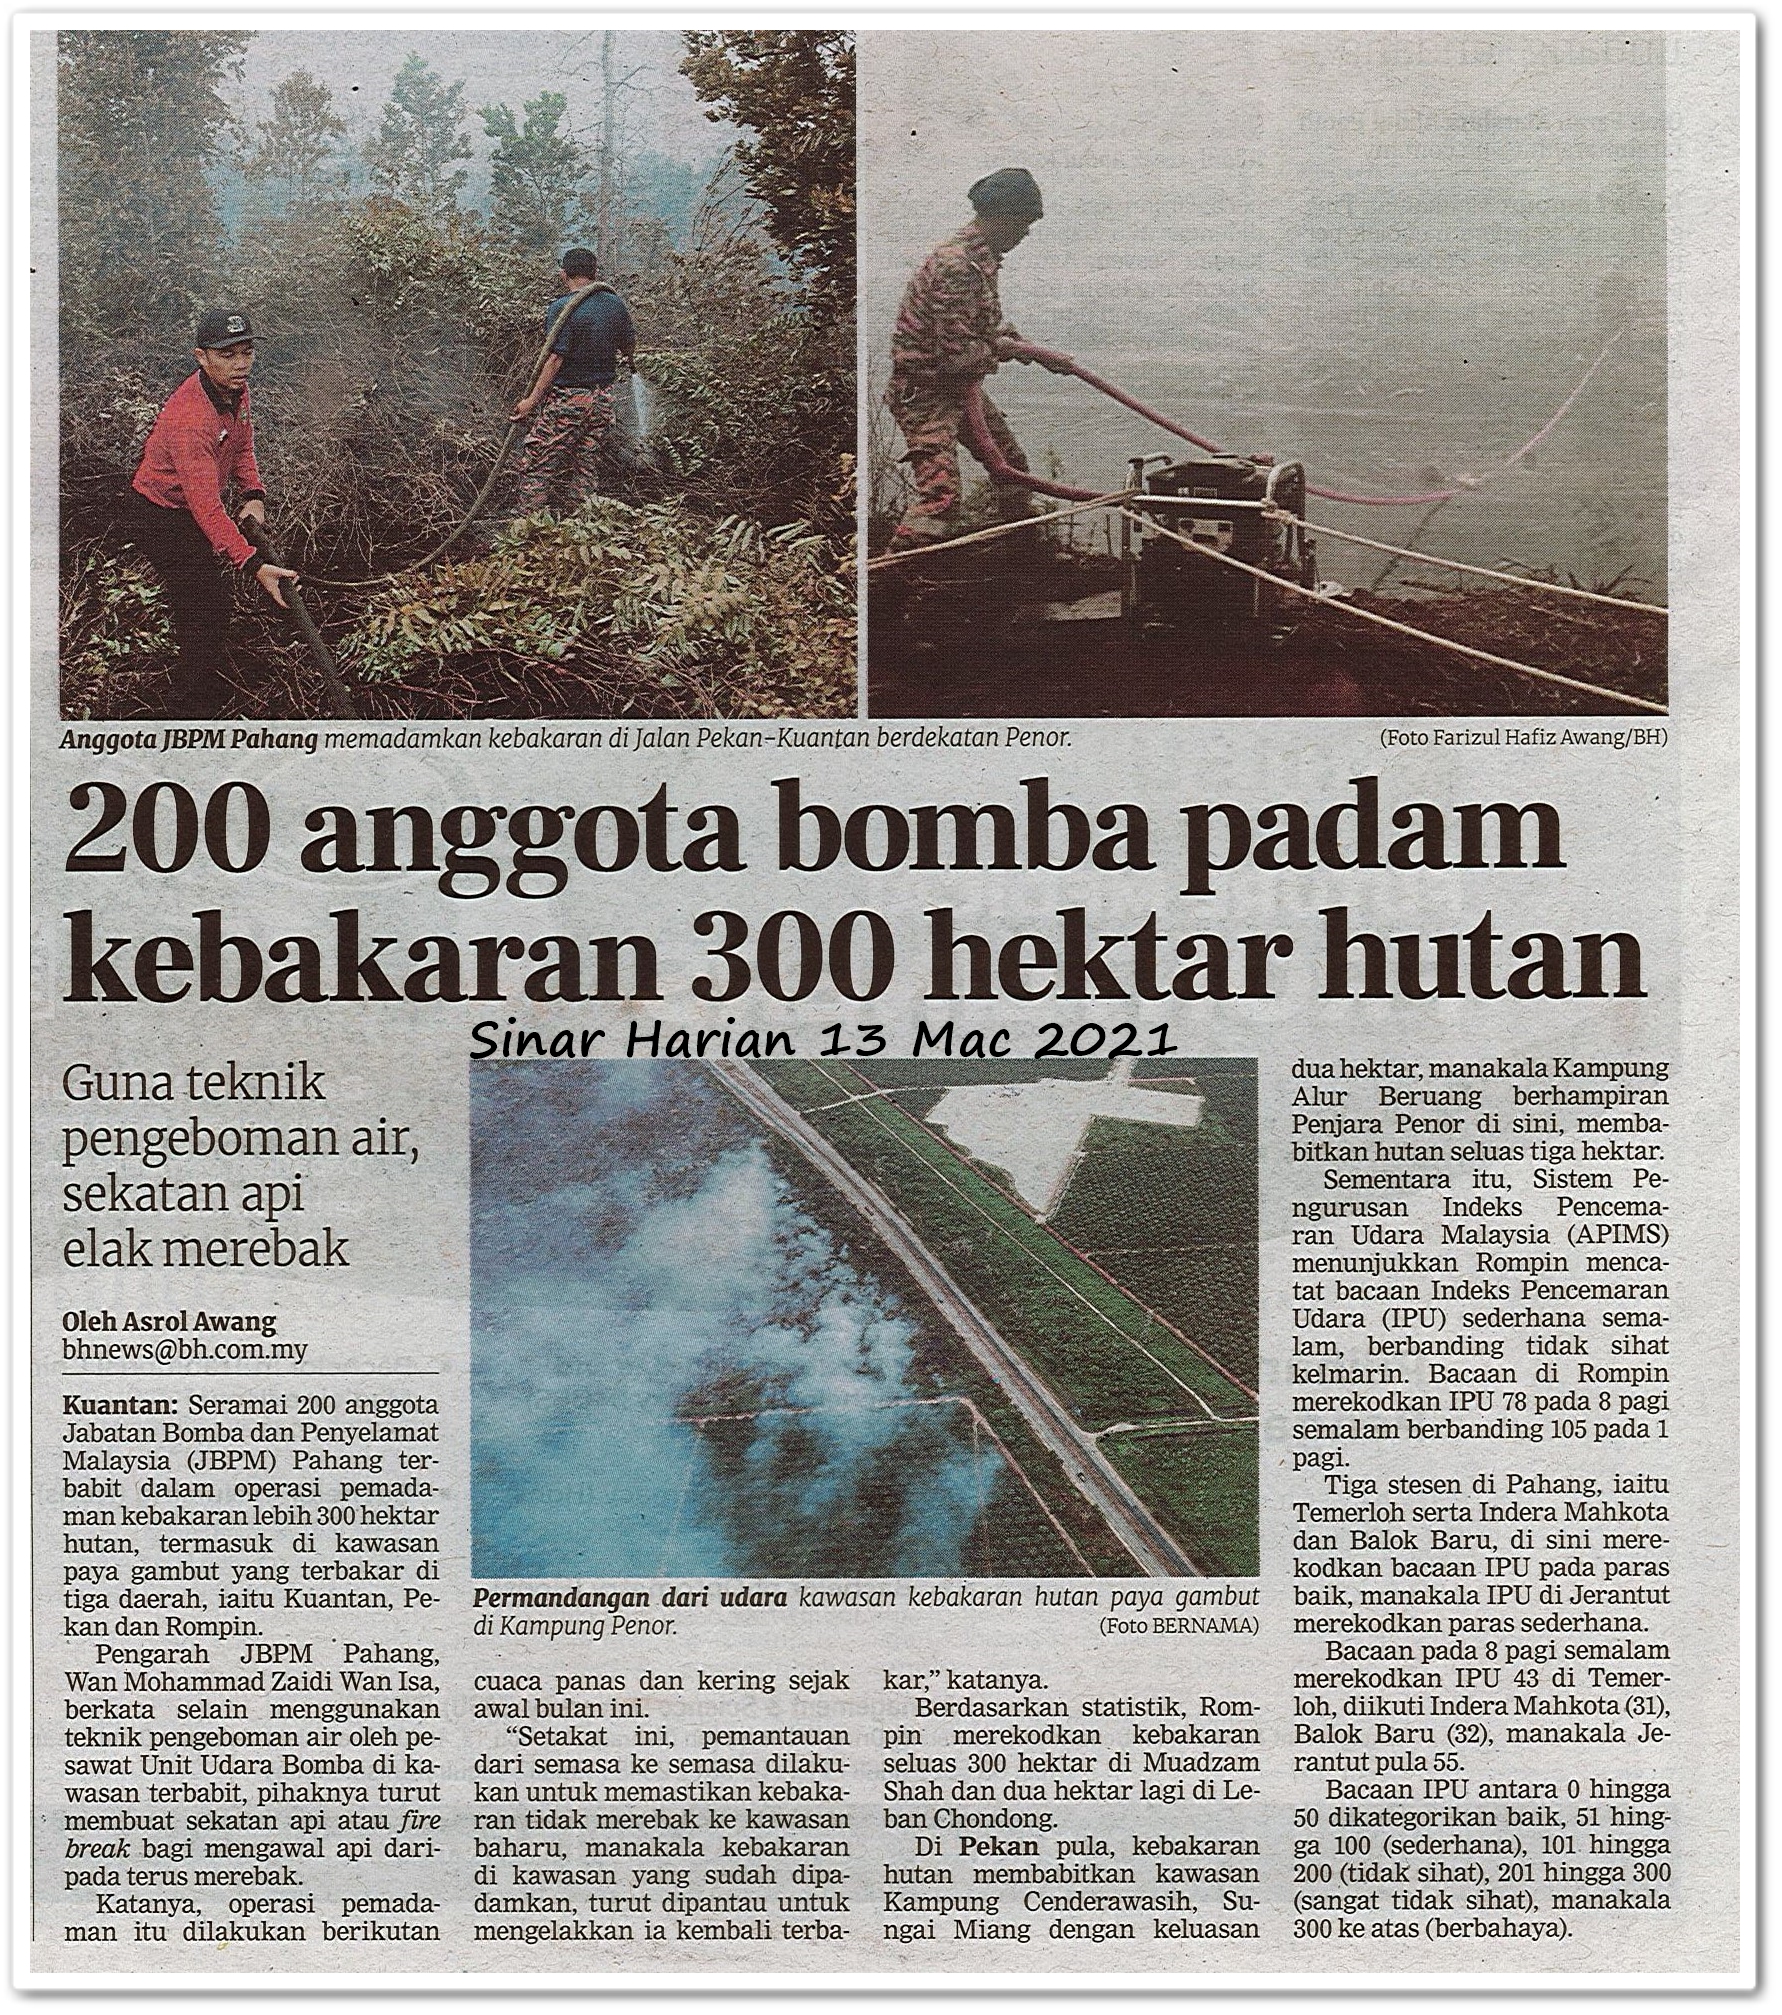 200 anggota bomba padam kebakaran 300 hektar hutan - Keratan akhbar Sinar Harian 13 Mac 2021